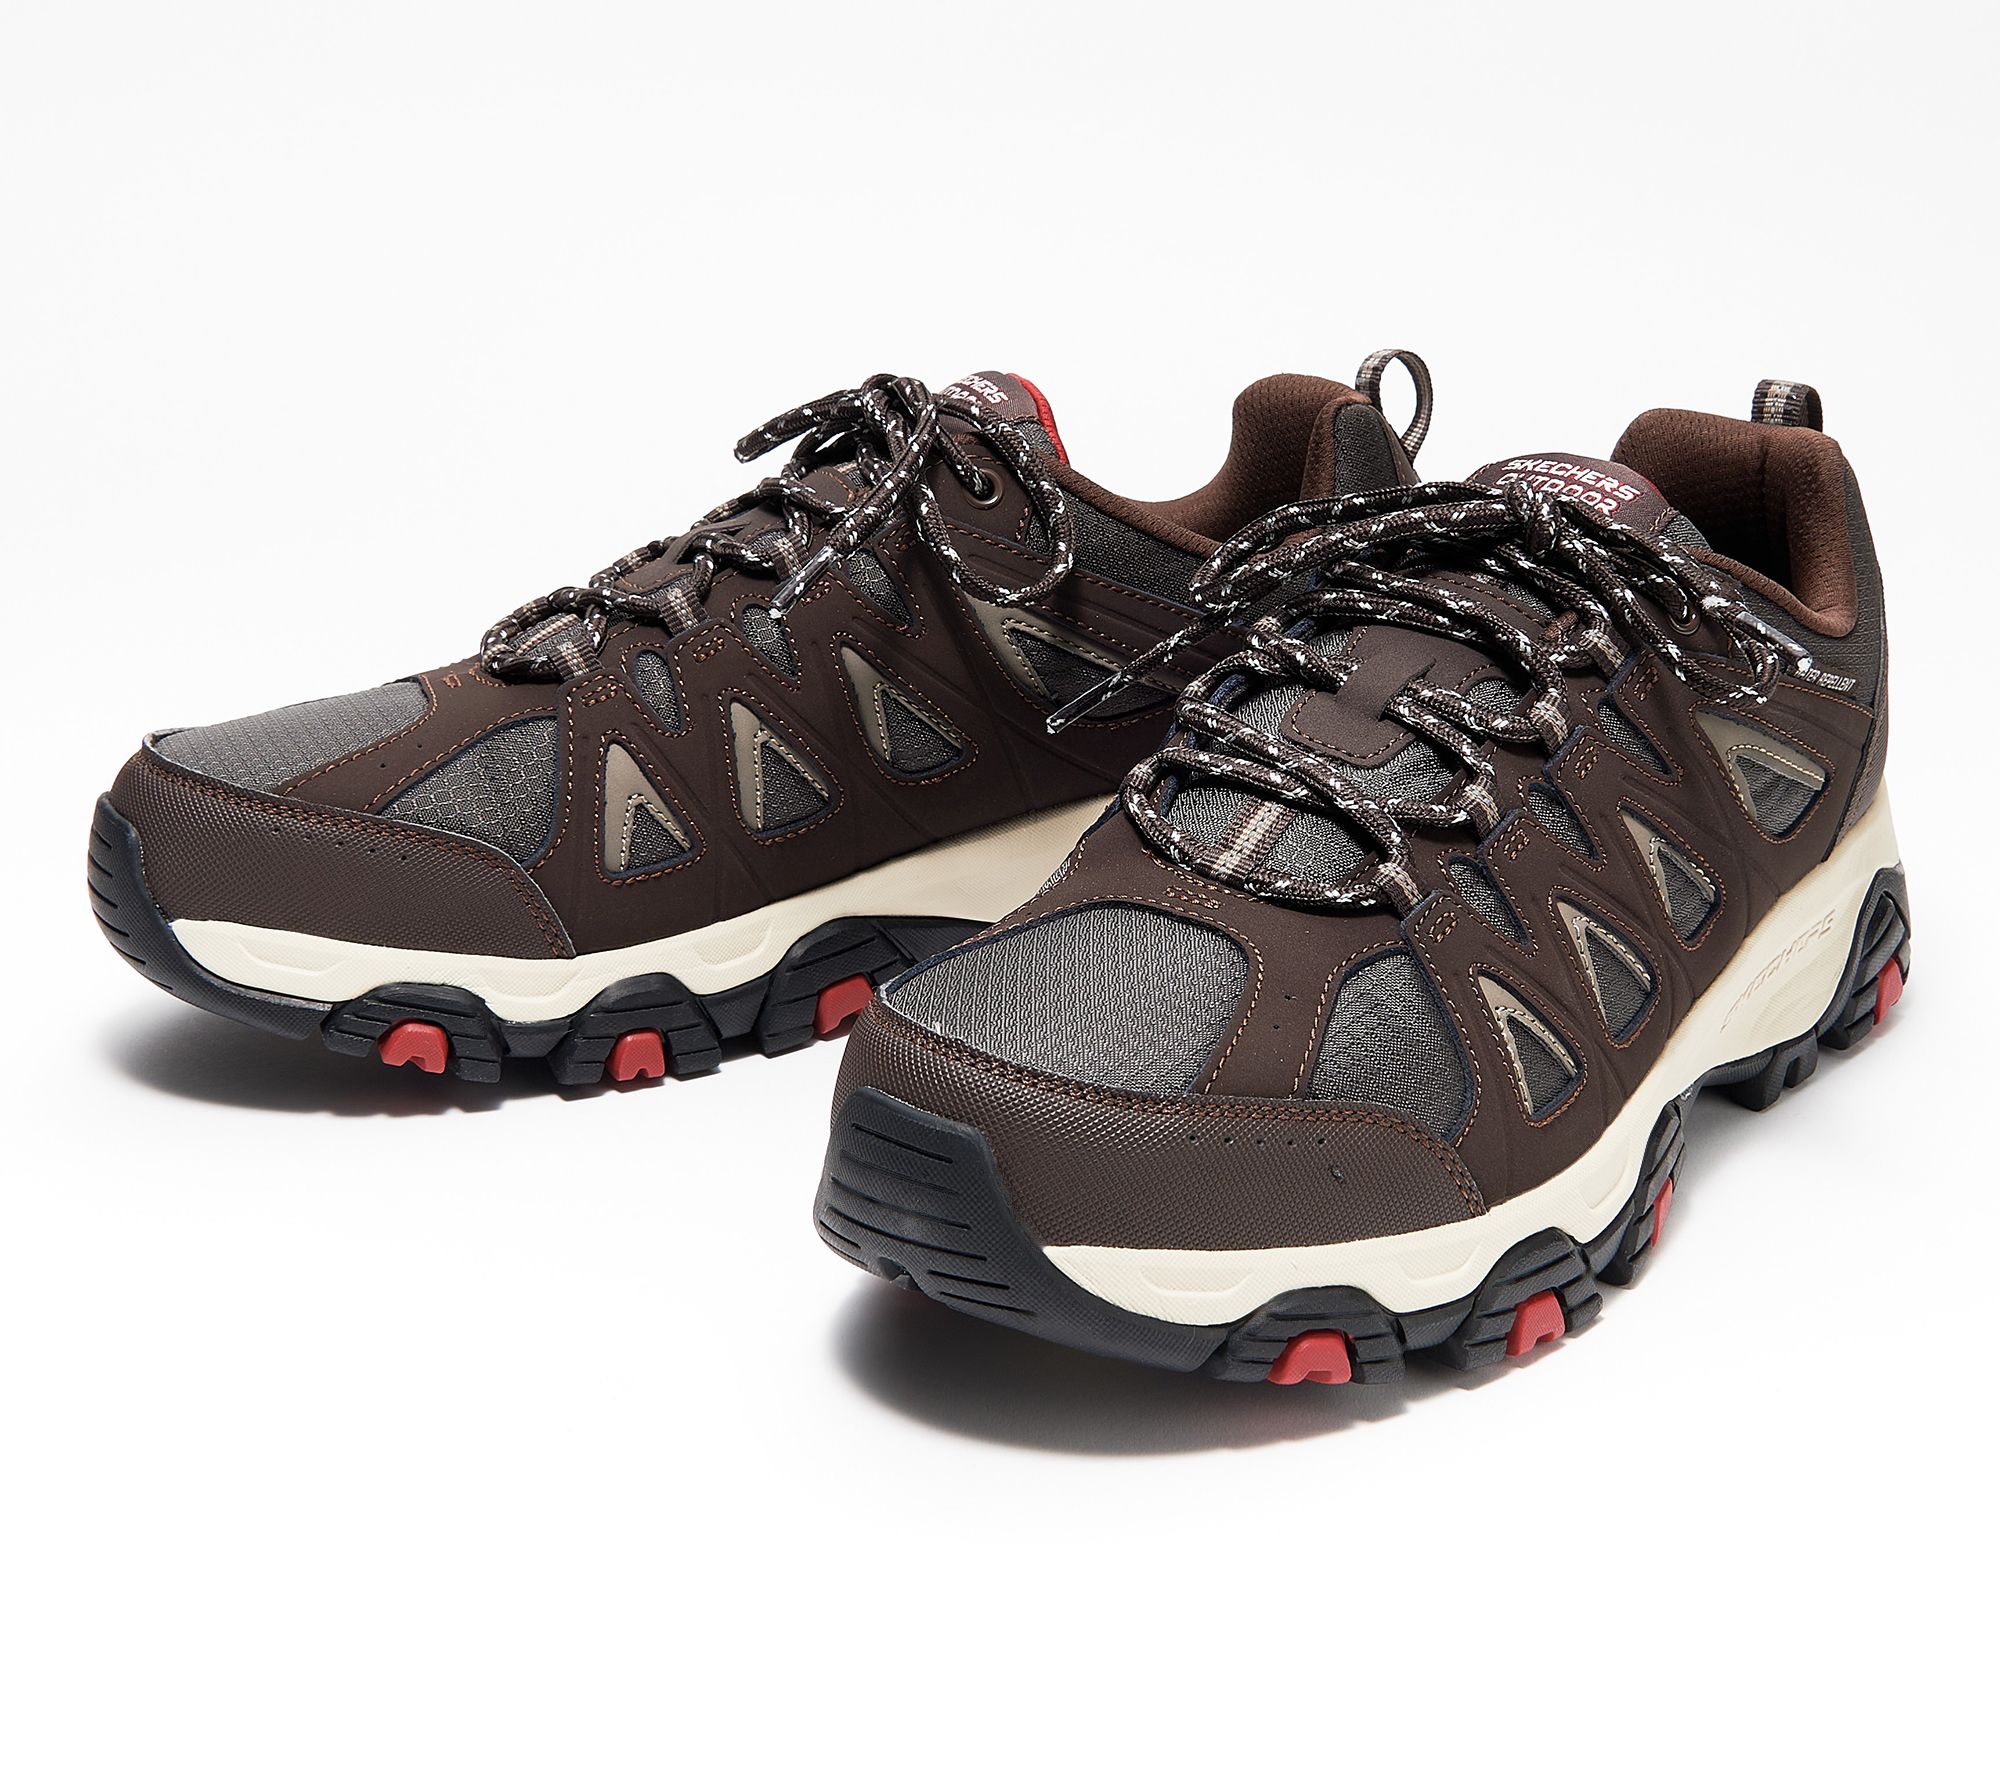 Skechers Men's Lace-Up Trail Sneakers - Terrabite - QVC.com